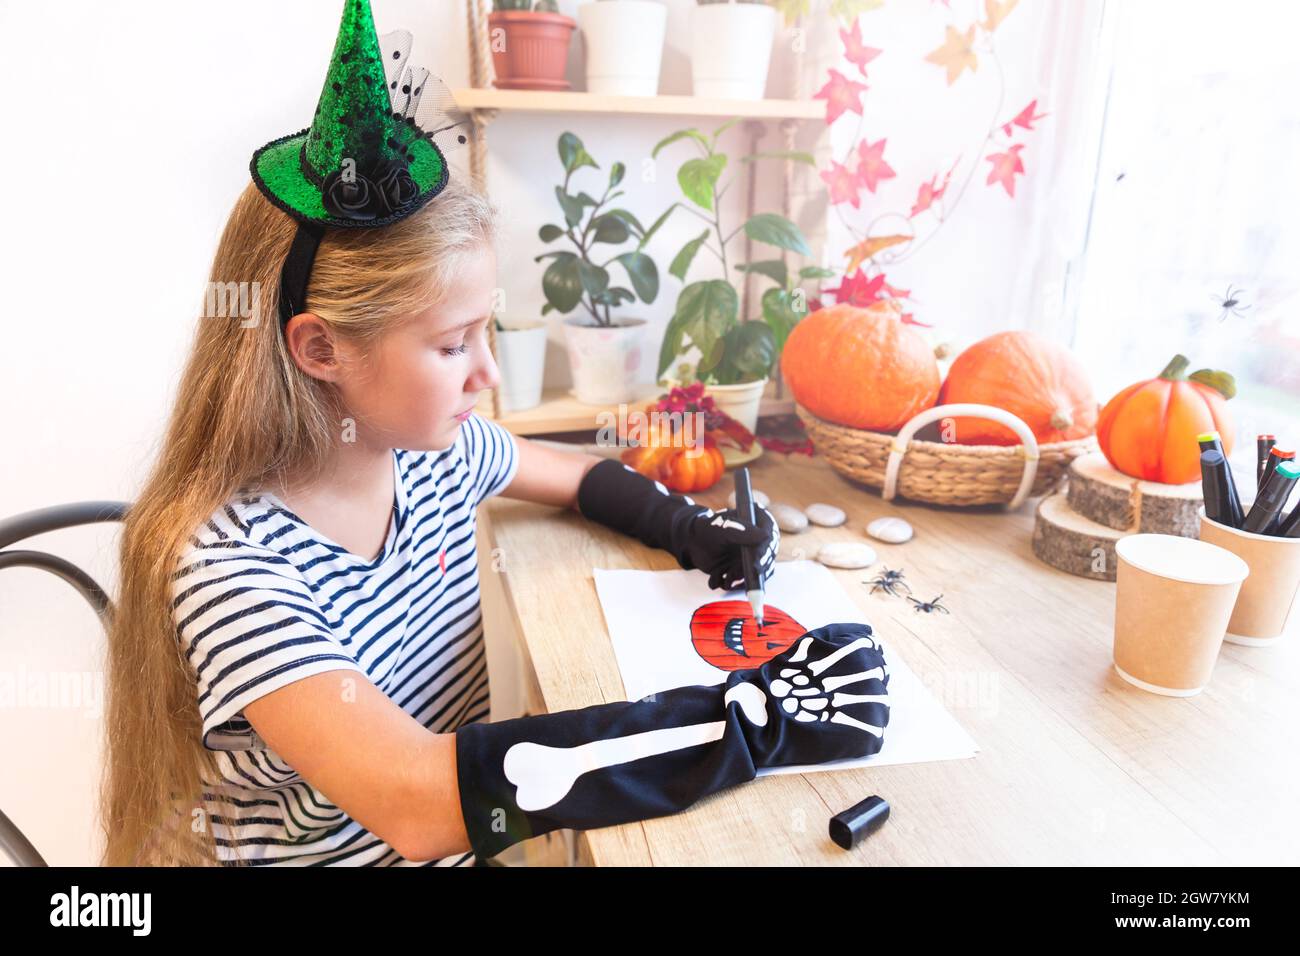 Une adolescente dans un chapeau de sorcière vert et des gants noirs avec des os dessine une citrouille, assise près de la fenêtre. Préparation pour la fête d'Halloween. Banque D'Images